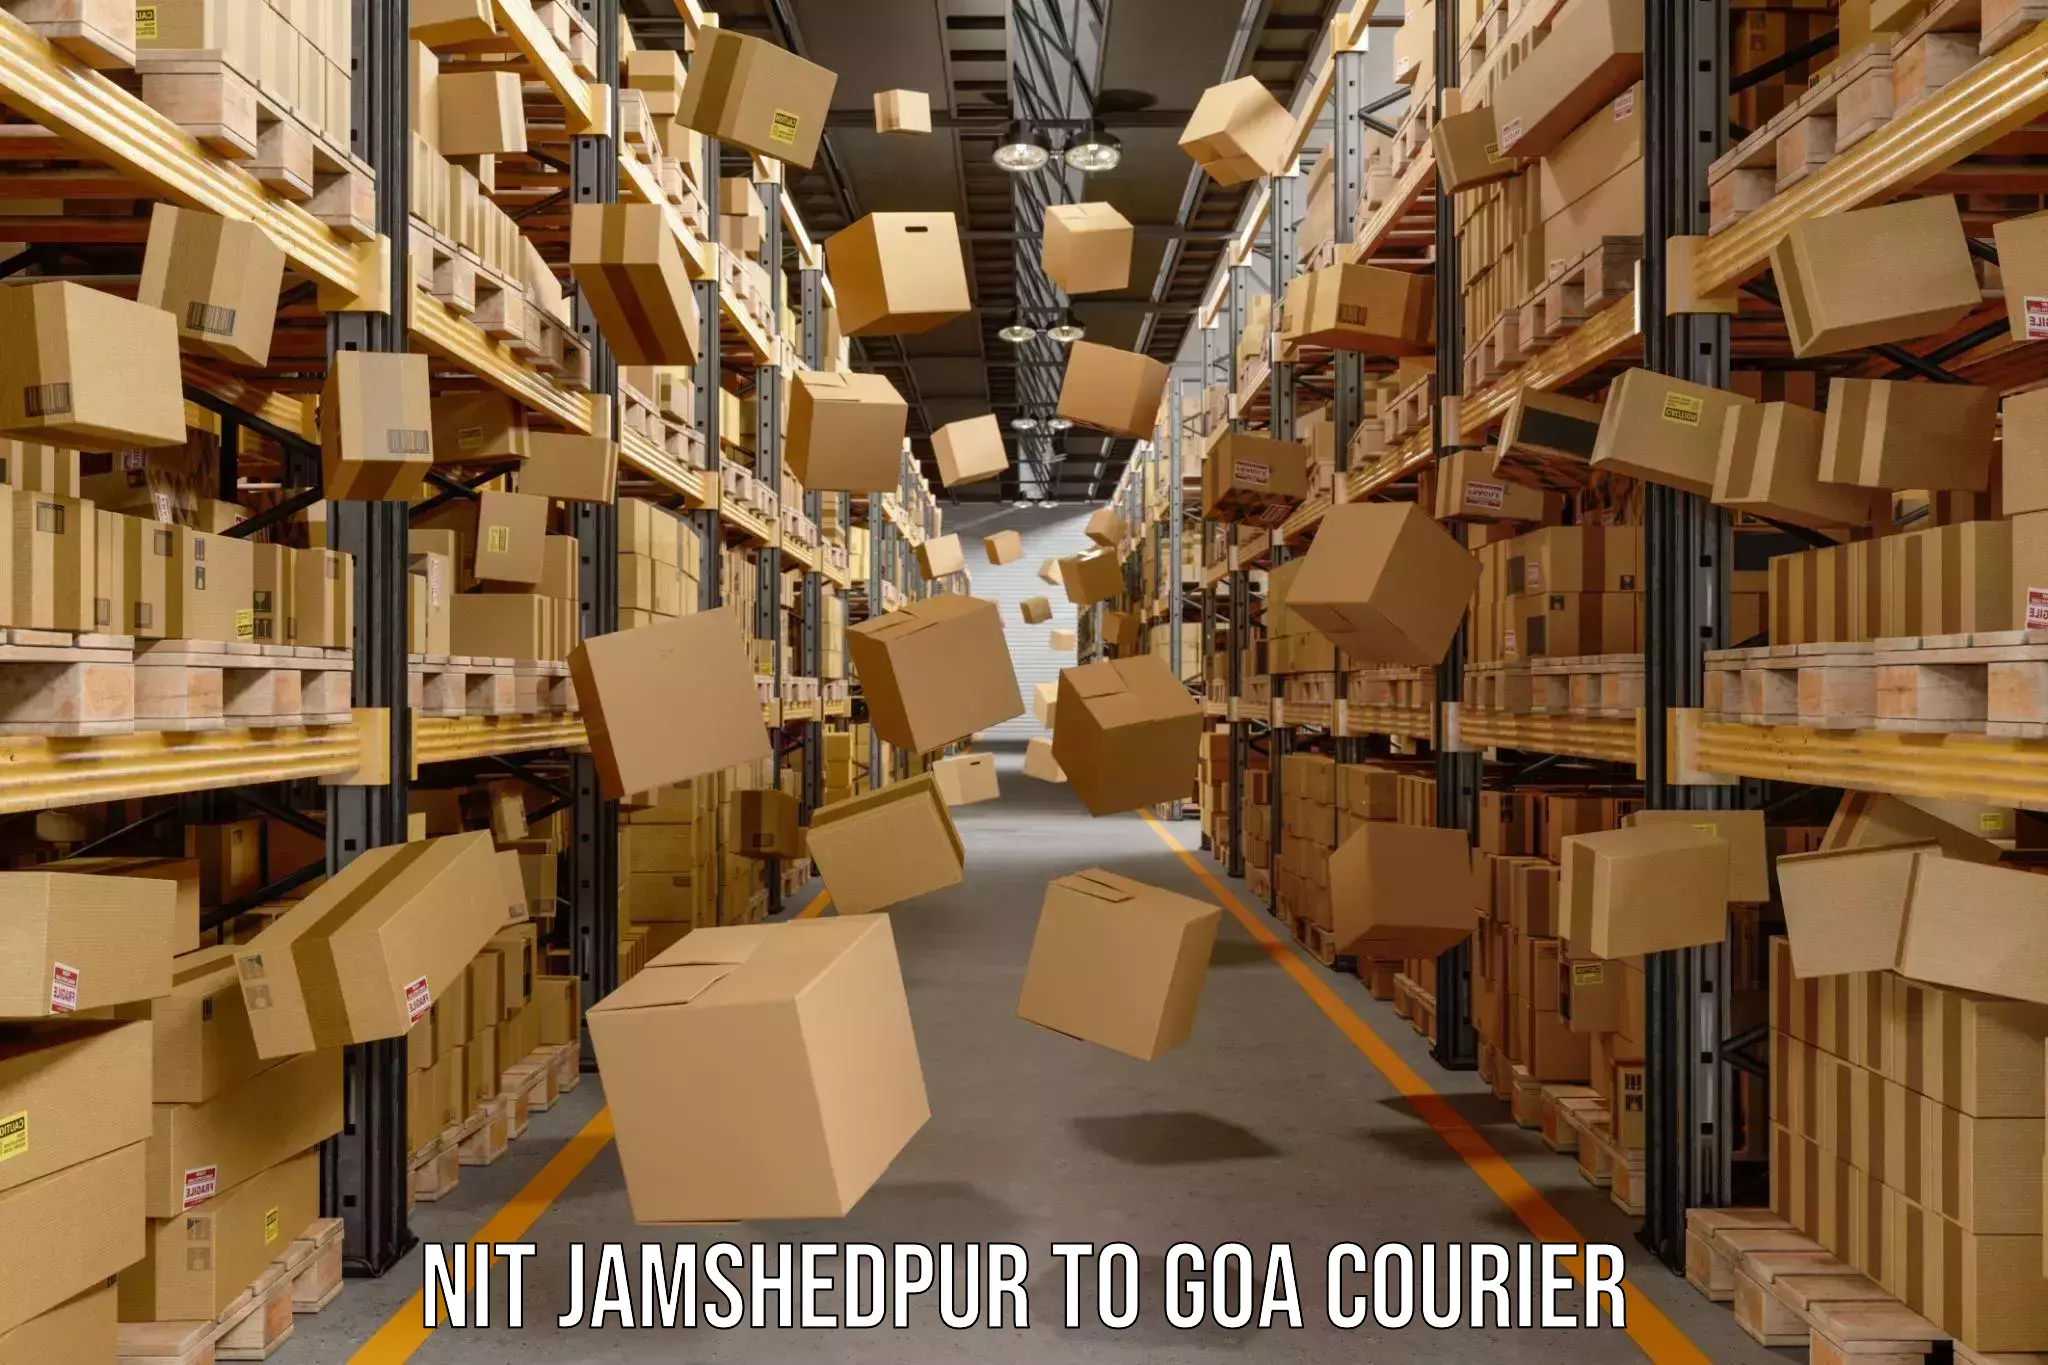 Digital courier platforms NIT Jamshedpur to NIT Goa